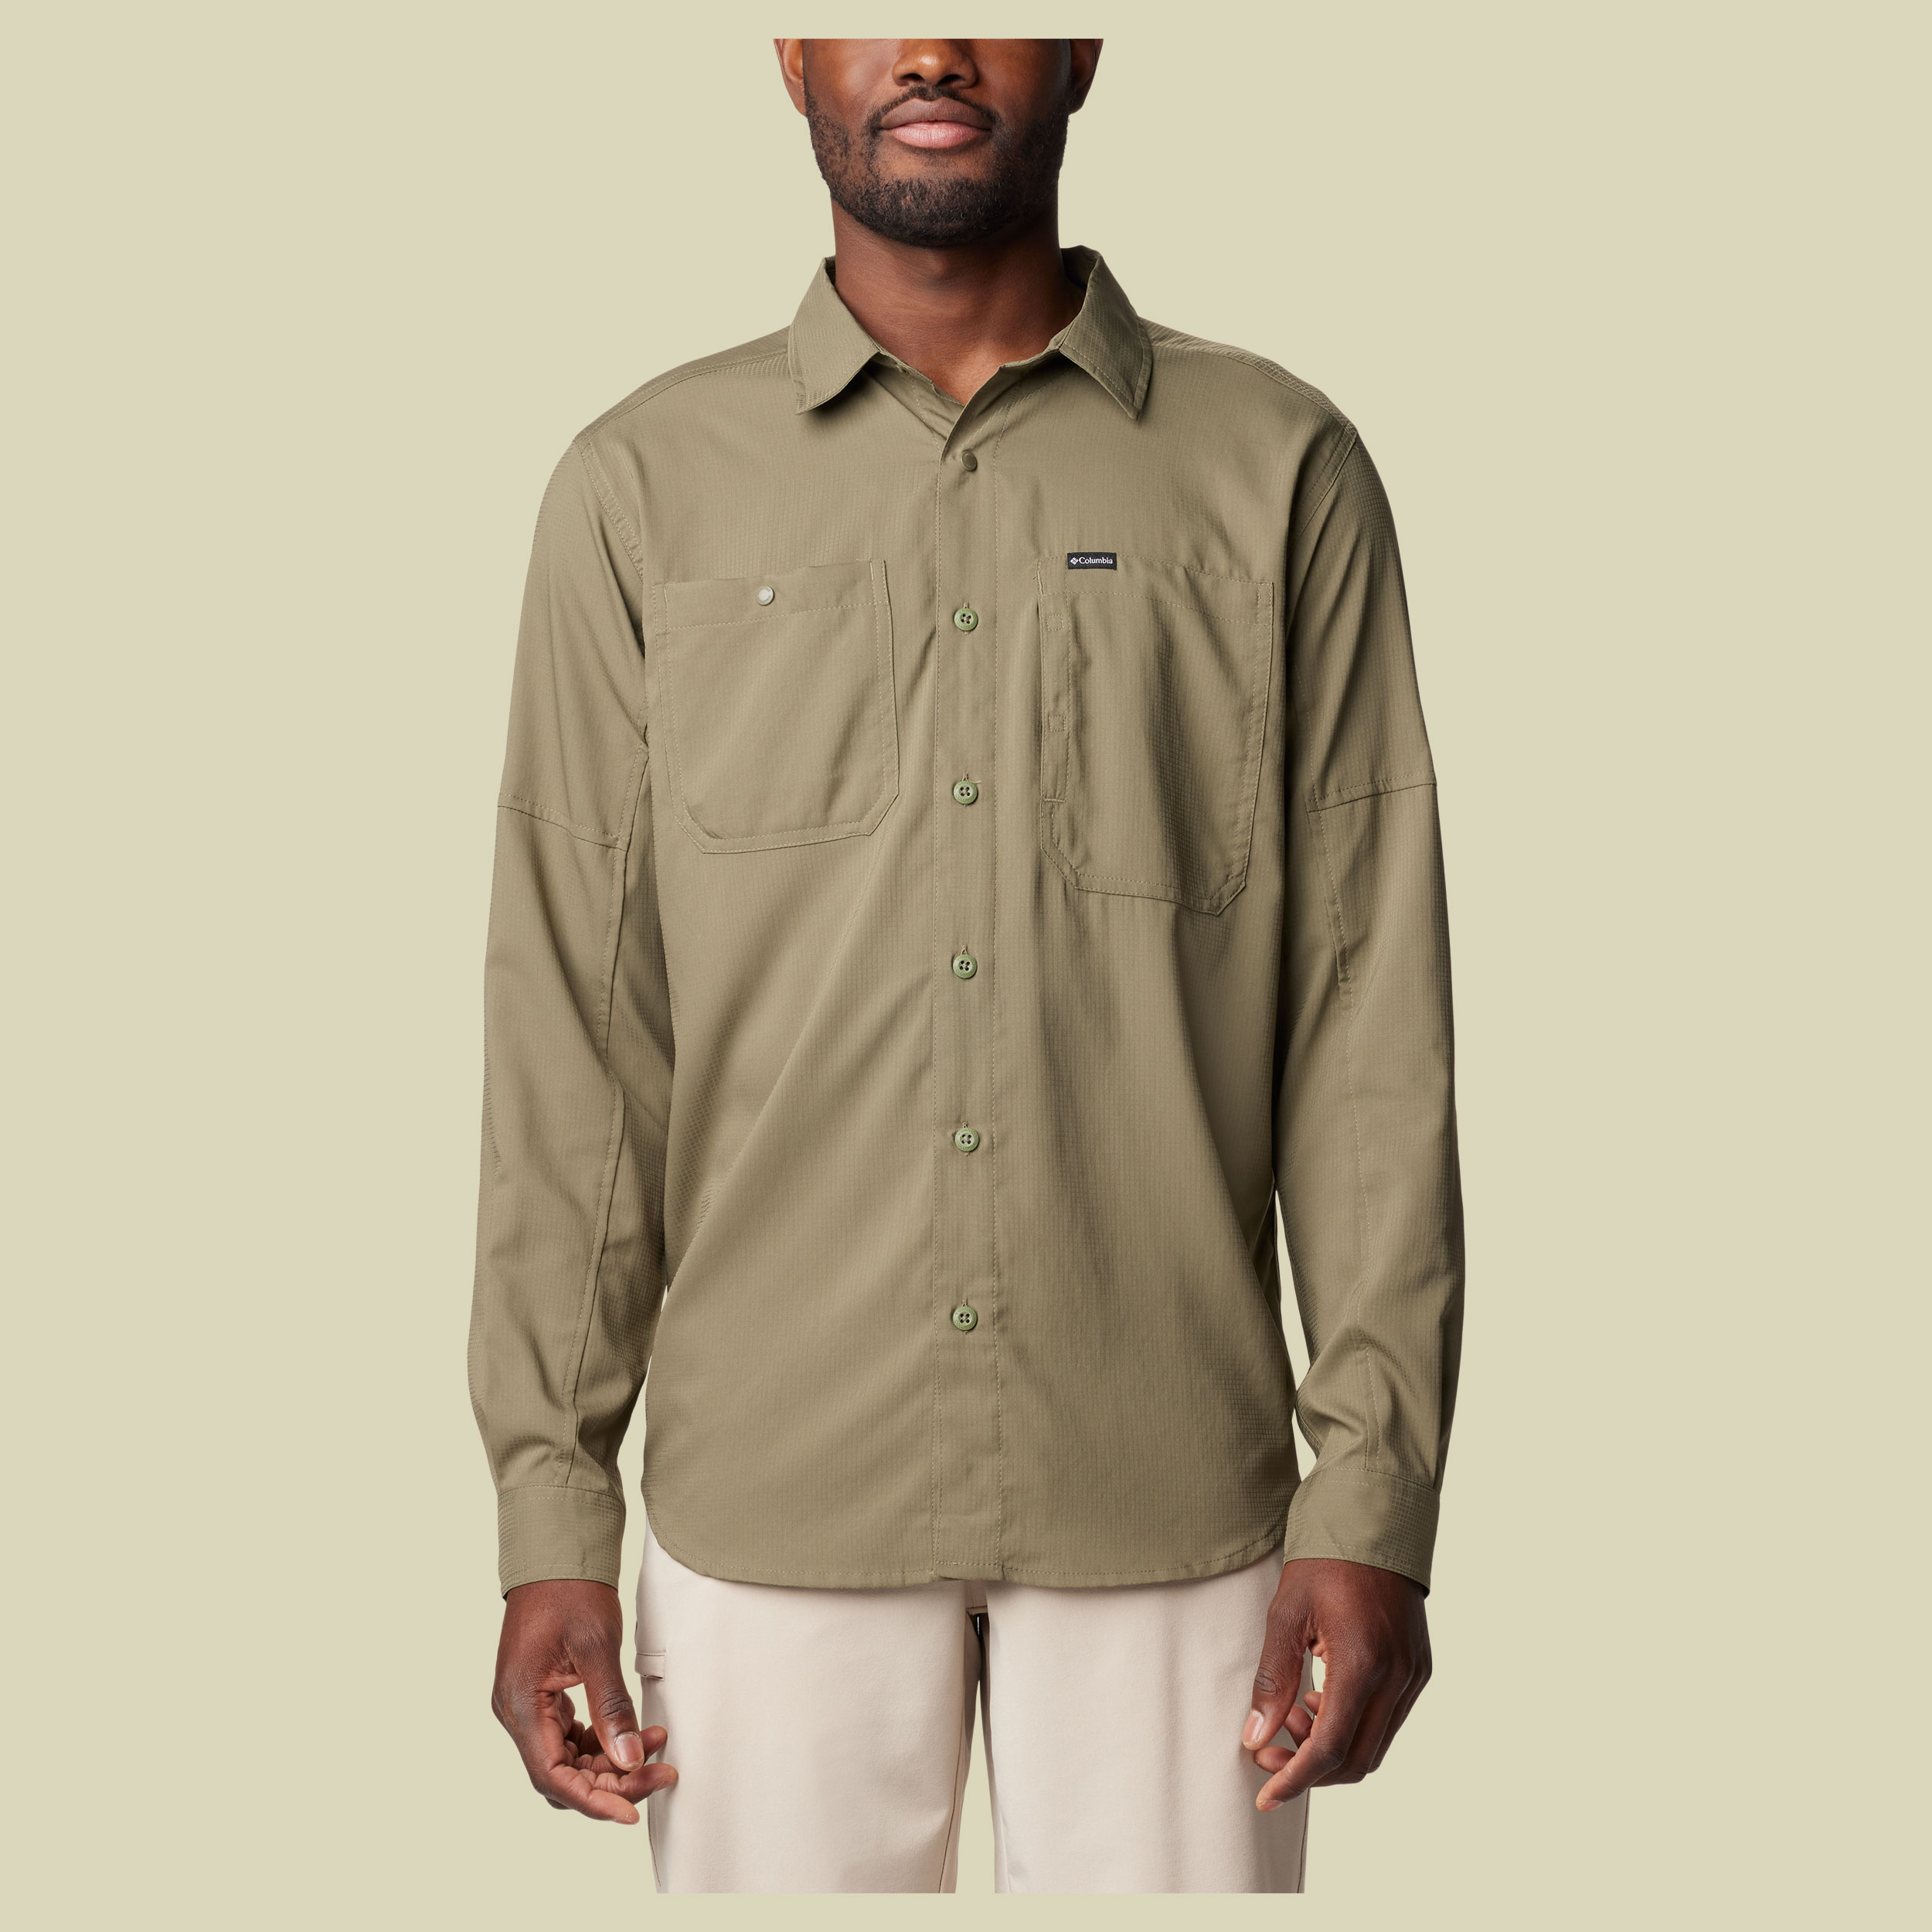 Silver Ridge Utility Lite Long Sleeve Shirt Men Größe M  Farbe stone green